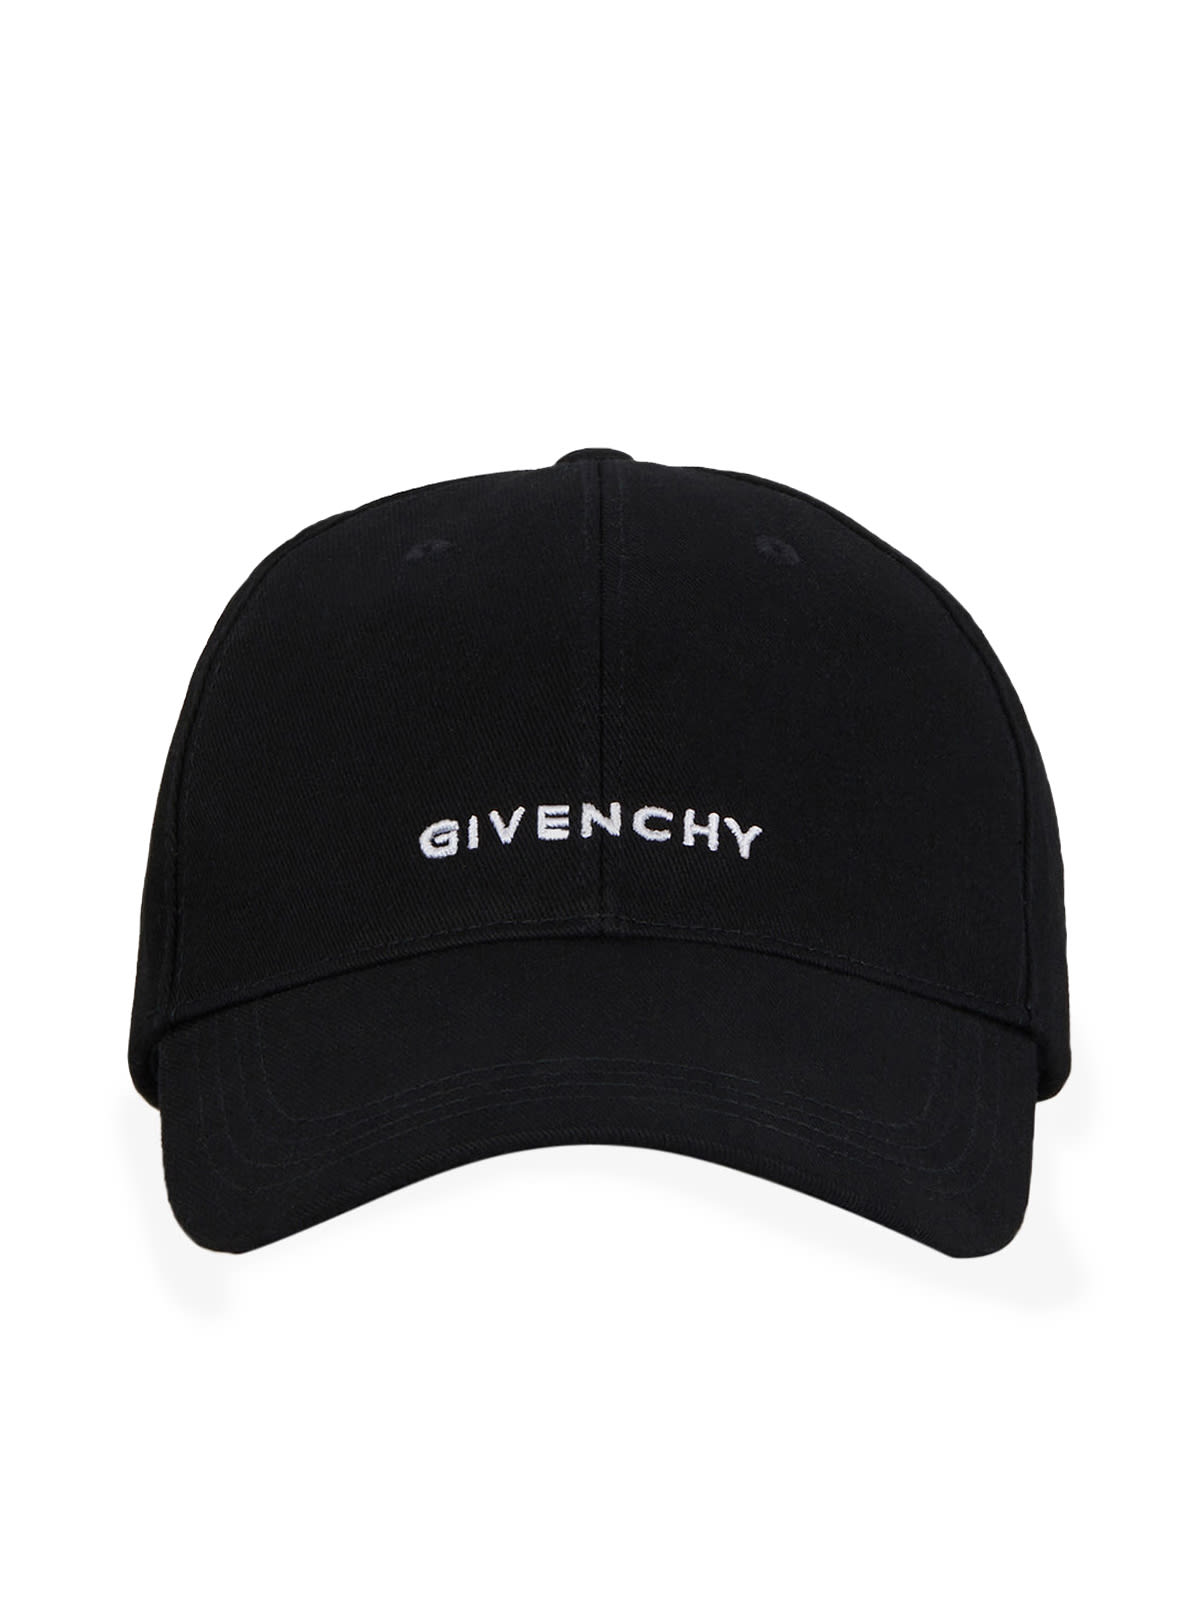 GIVENCHY キャップ キャップ 帽子 メンズ 販売大阪